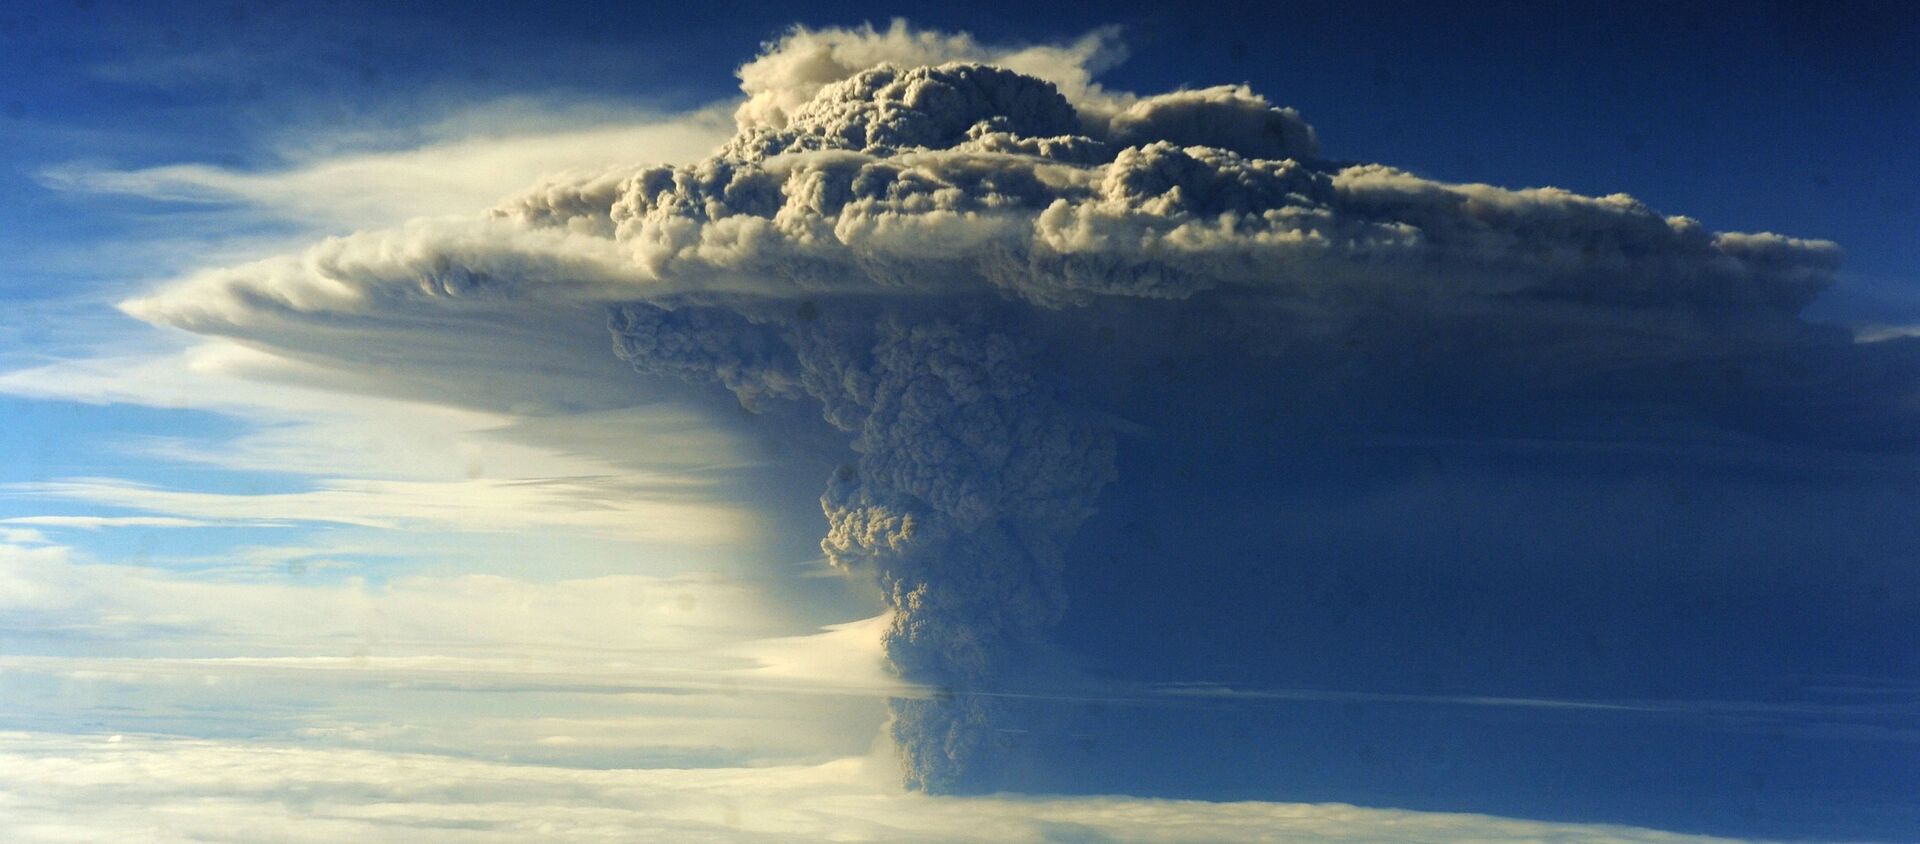 Снимок извержения вулкана Пуеуэ в Чили  - Sputnik Таджикистан, 1920, 17.07.2019